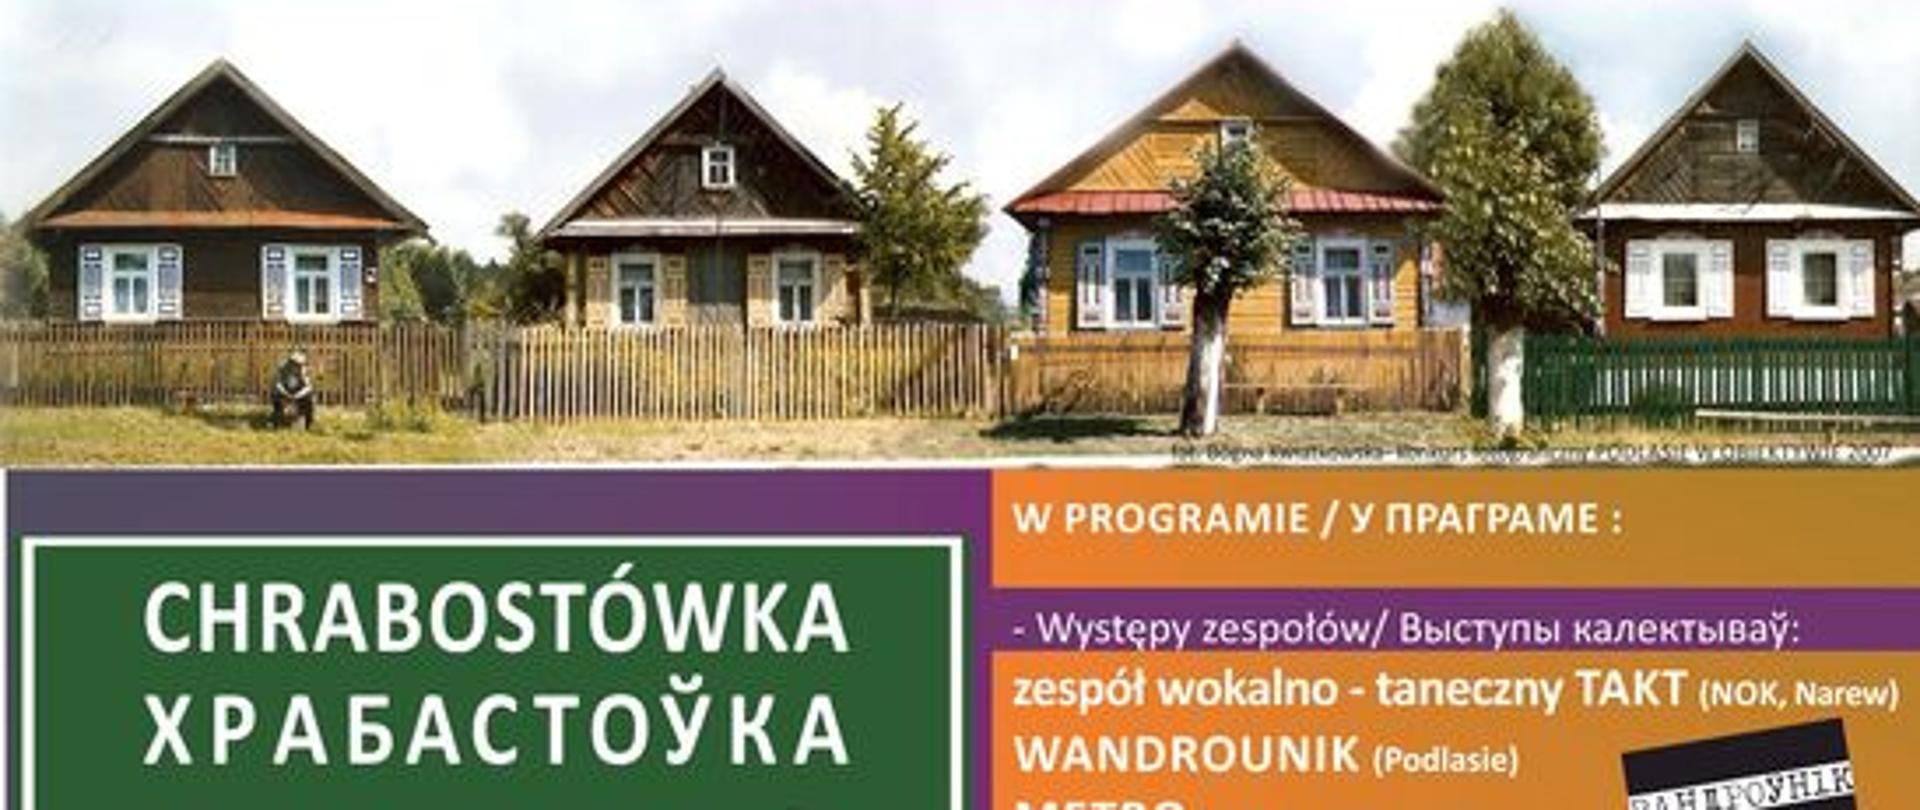 Plakat promujący wydarzenie - w centralnej części zdjęcie domów stojących w szeregu, u góry nazwa wydarzenia, u dołu informacje organizacyjne, zawarte w artykule